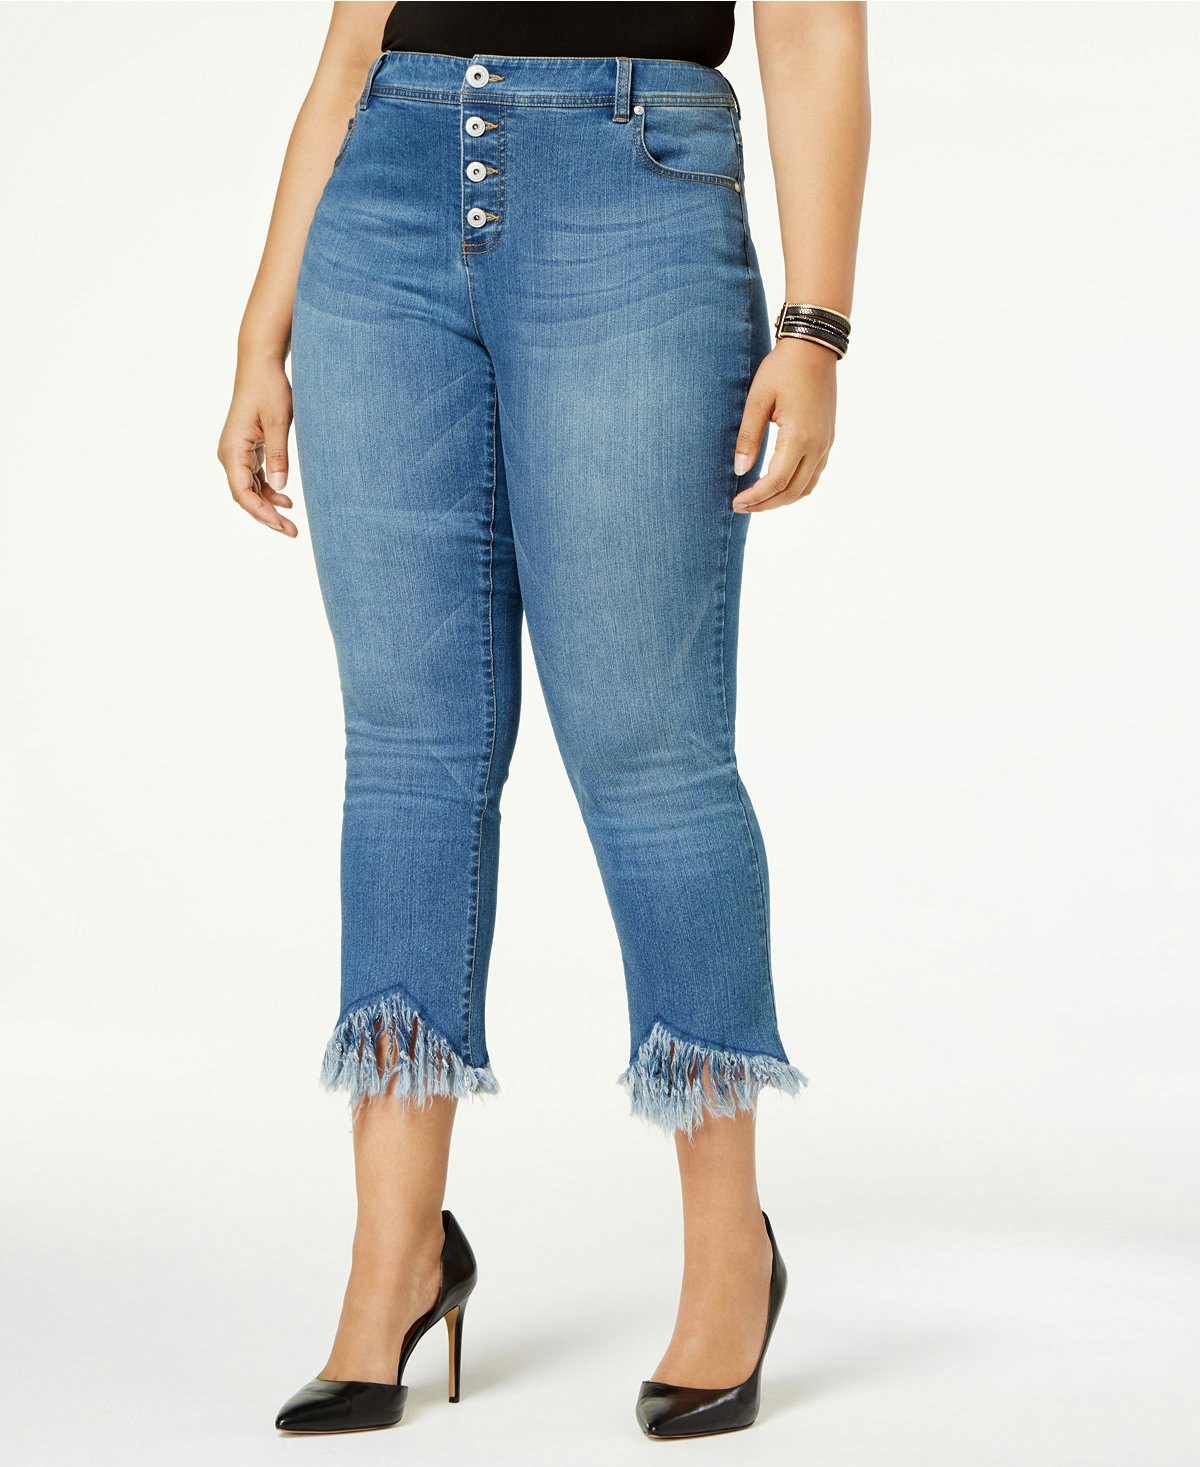 fringe jeans plus size